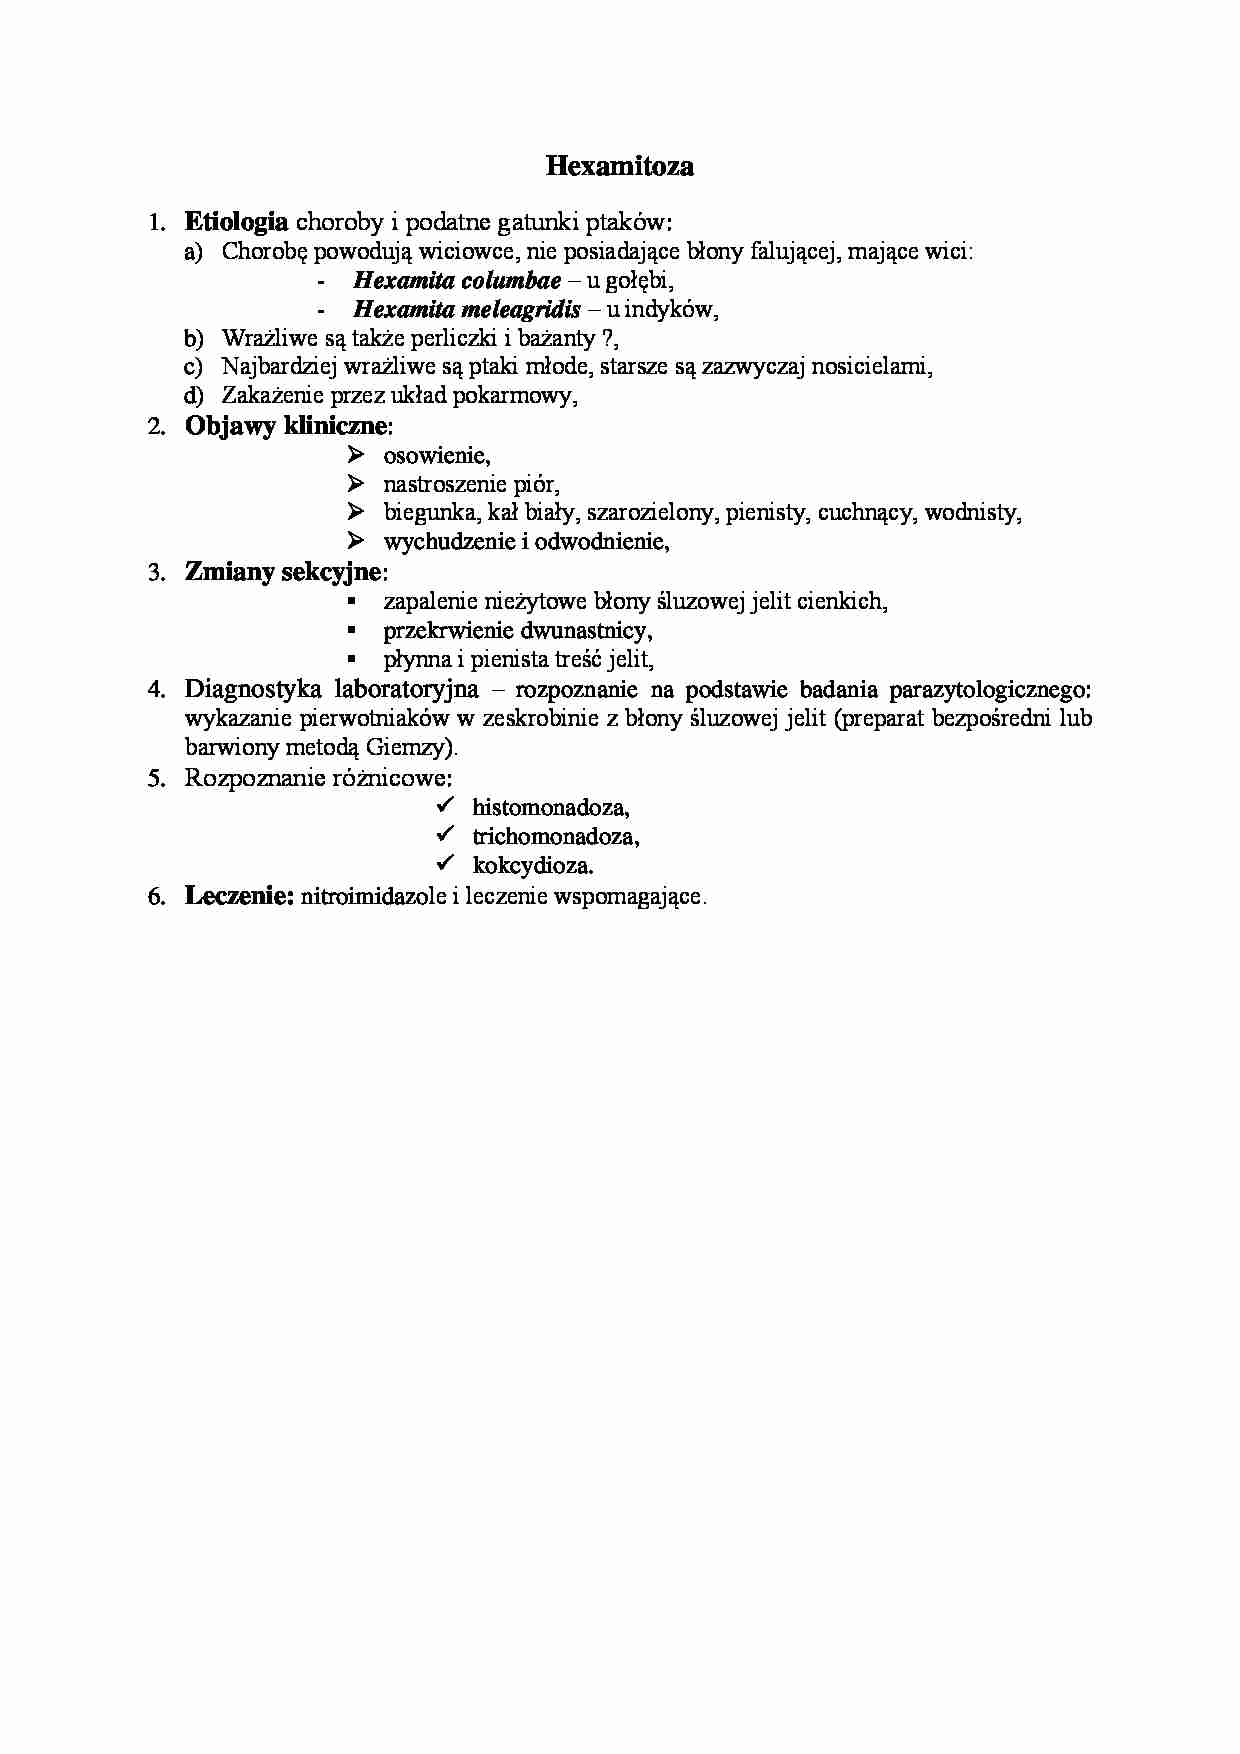 Choroby pierwotniacze - Hexamitoza - strona 1